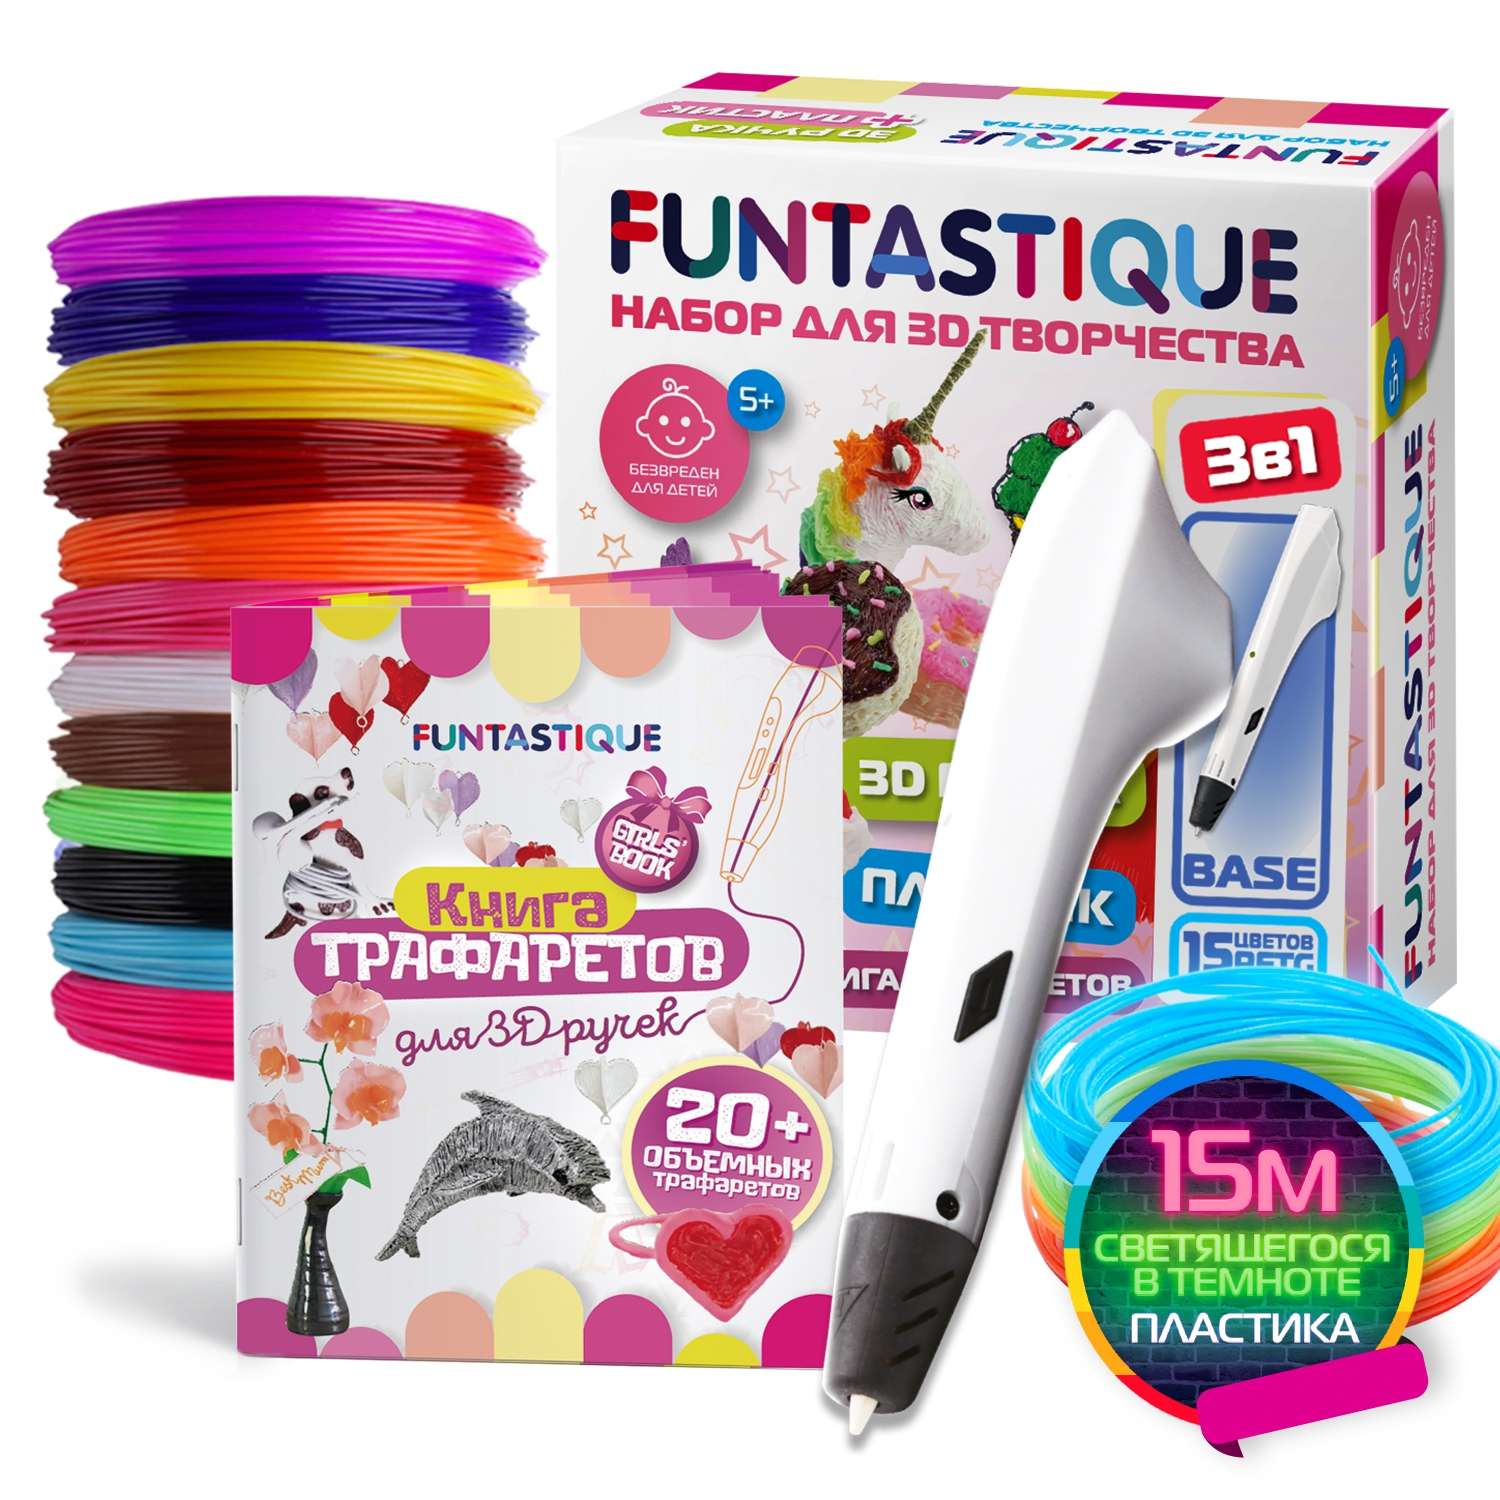 Набор для 3Д творчества FUNTASTIQUE 3D-ручка Base + petg 7 светящийся 3 + Книжка с трафаретами для девочек - фото 1